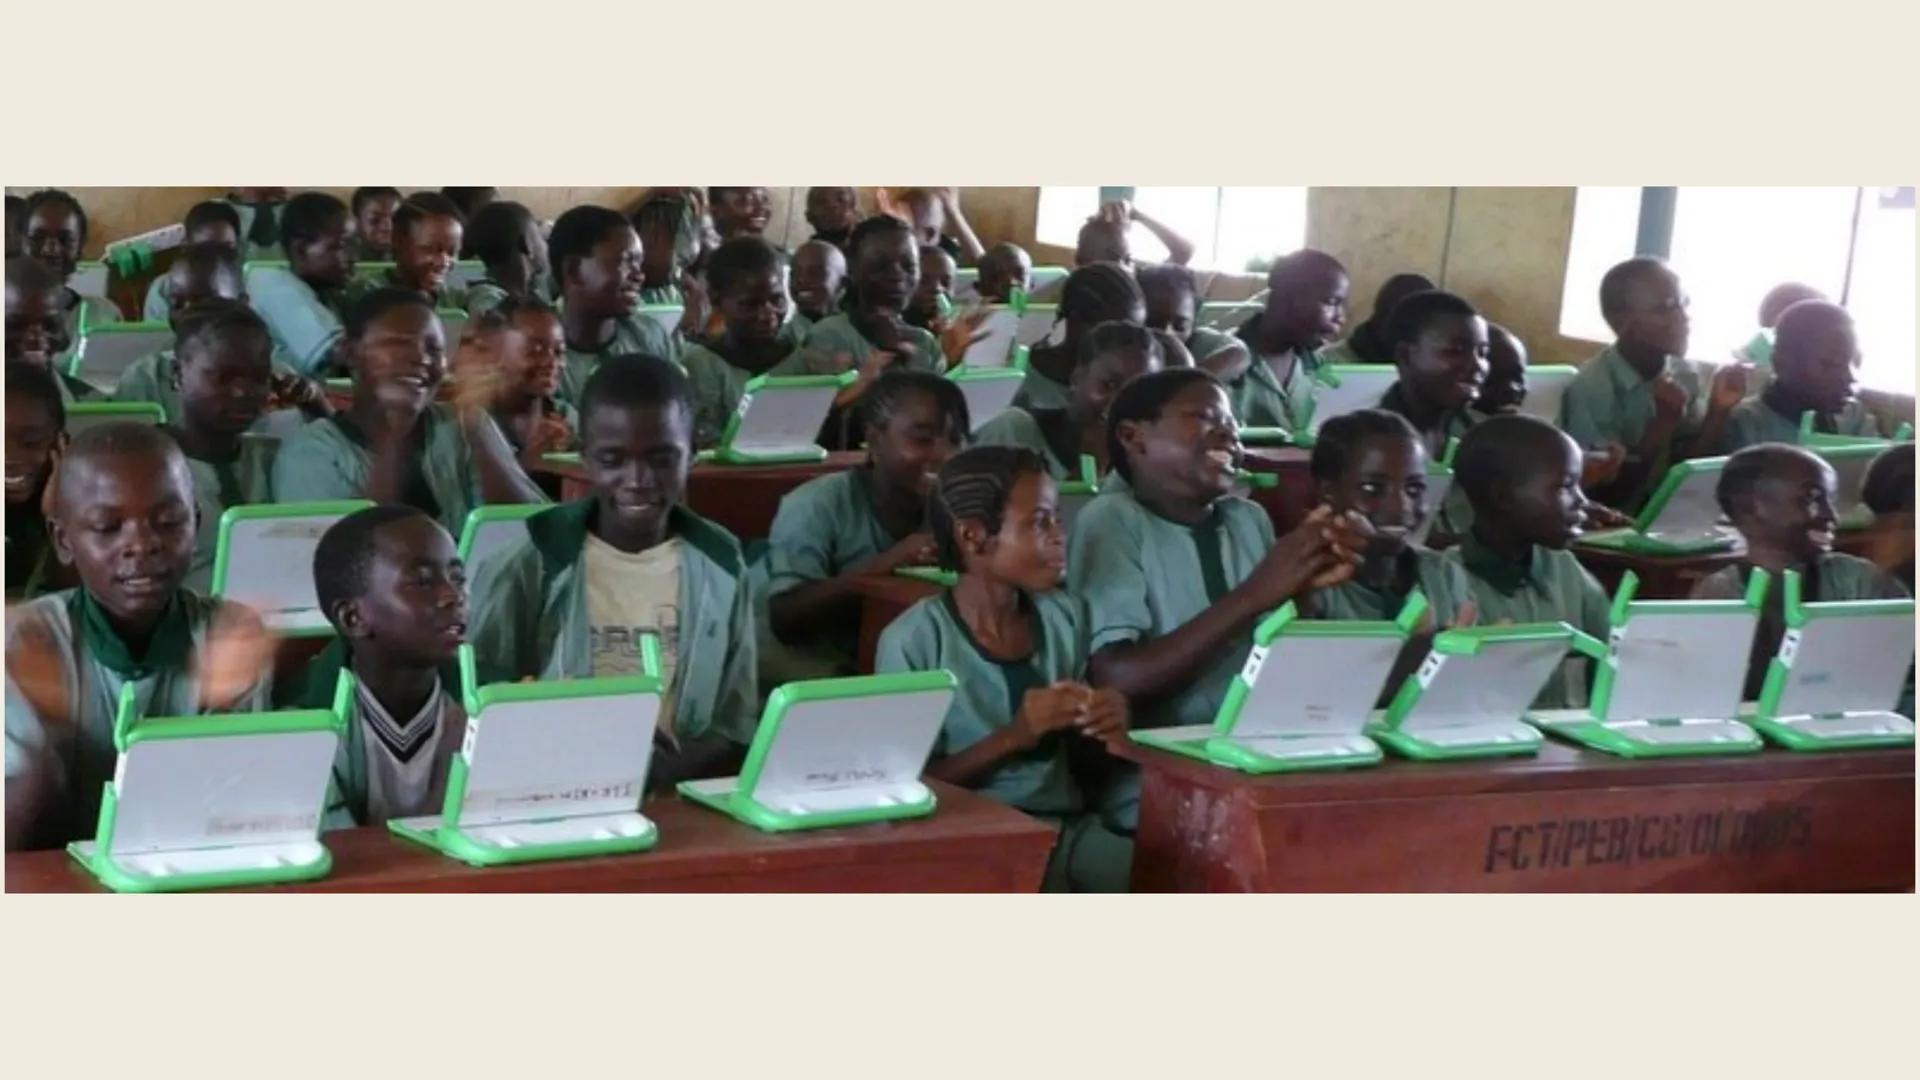 Erziehung in Nigeria
Erziehung und Bildung International • Nigeria
Inhalt
Erziehung auf dem Land
-> Erziehungsmethoden
• Erziehung in der Gr